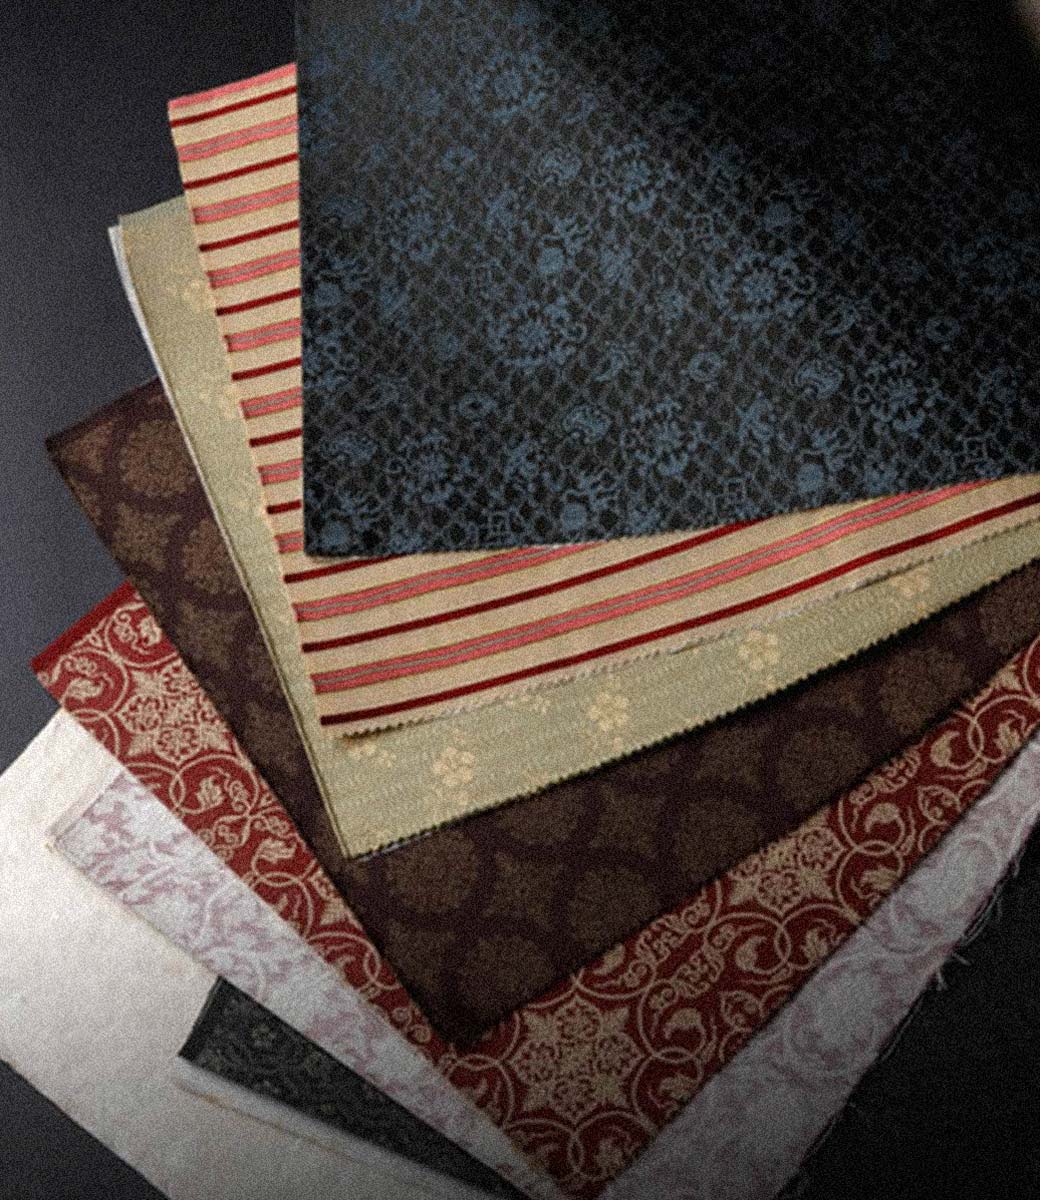 龍村美術織物京都 公式サイト   織物、和装小物、茶道具